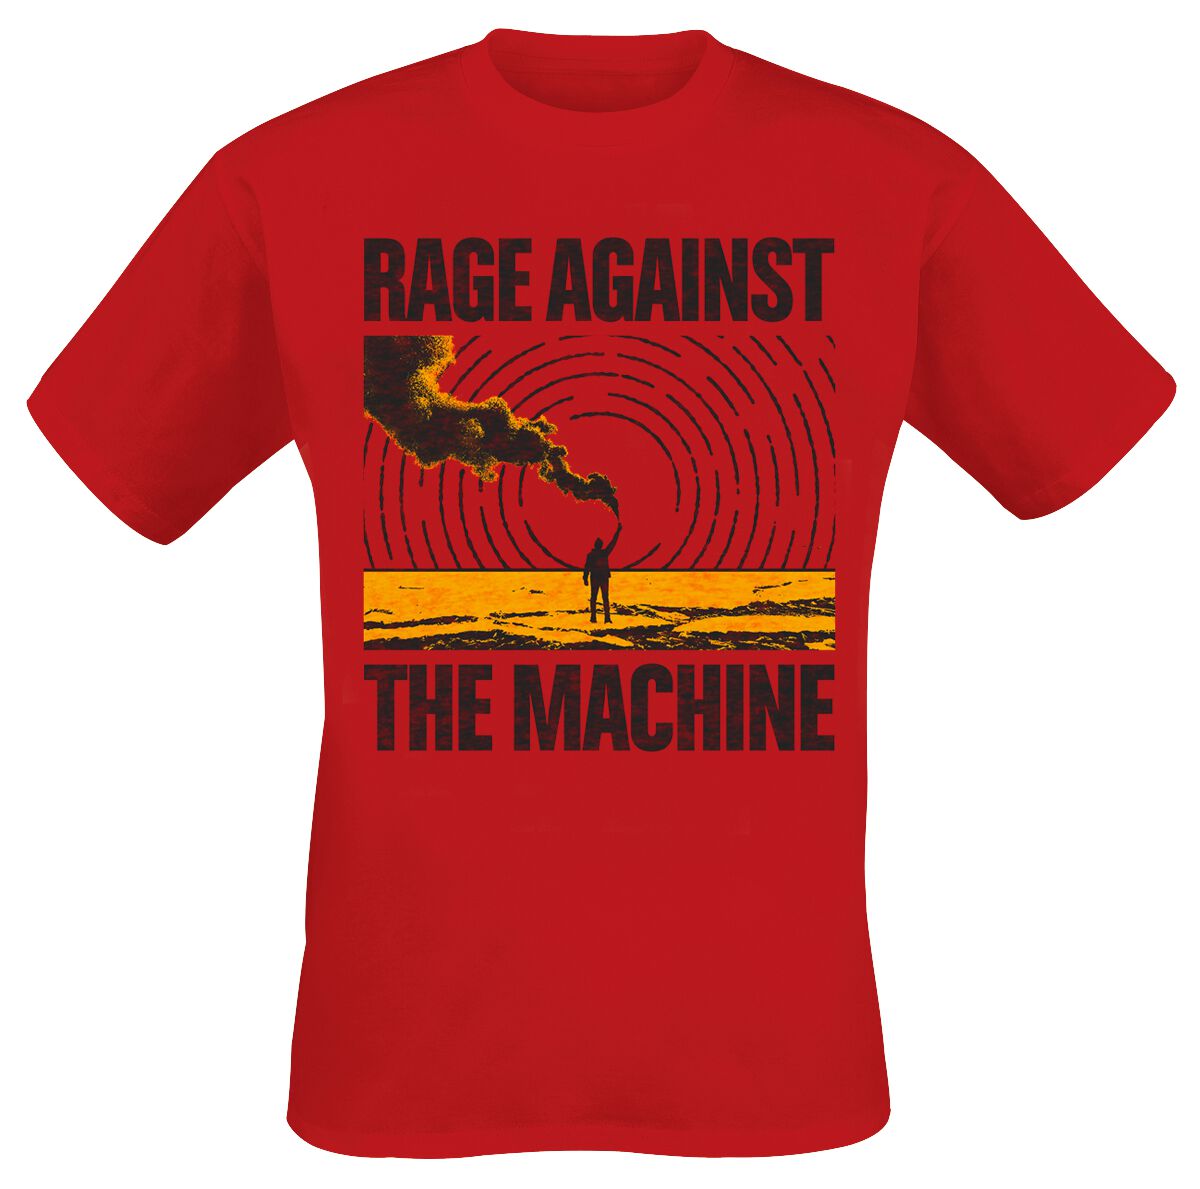 Rage Against The Machine T-Shirt - Smoke Signal - S bis XXL - für Männer - Größe S - rot  - Lizenziertes Merchandise!